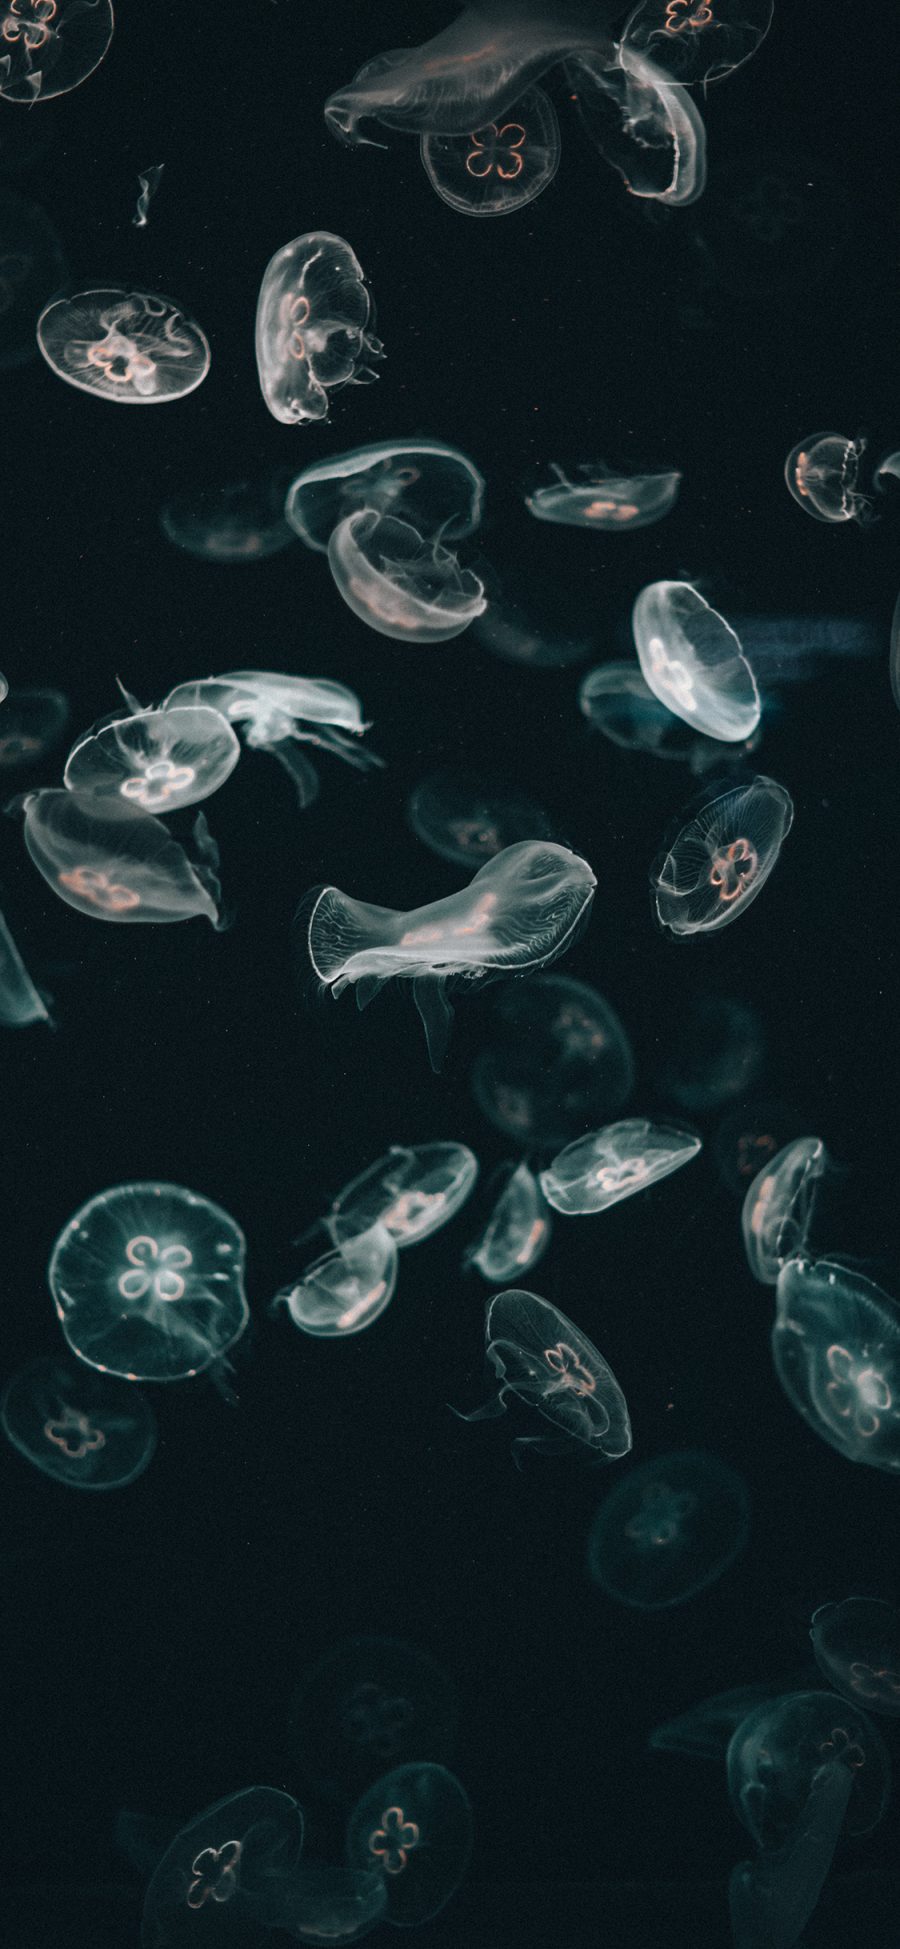 [2436×1125]海洋生物 水母群 海蜇 浮游生物 苹果手机壁纸图片